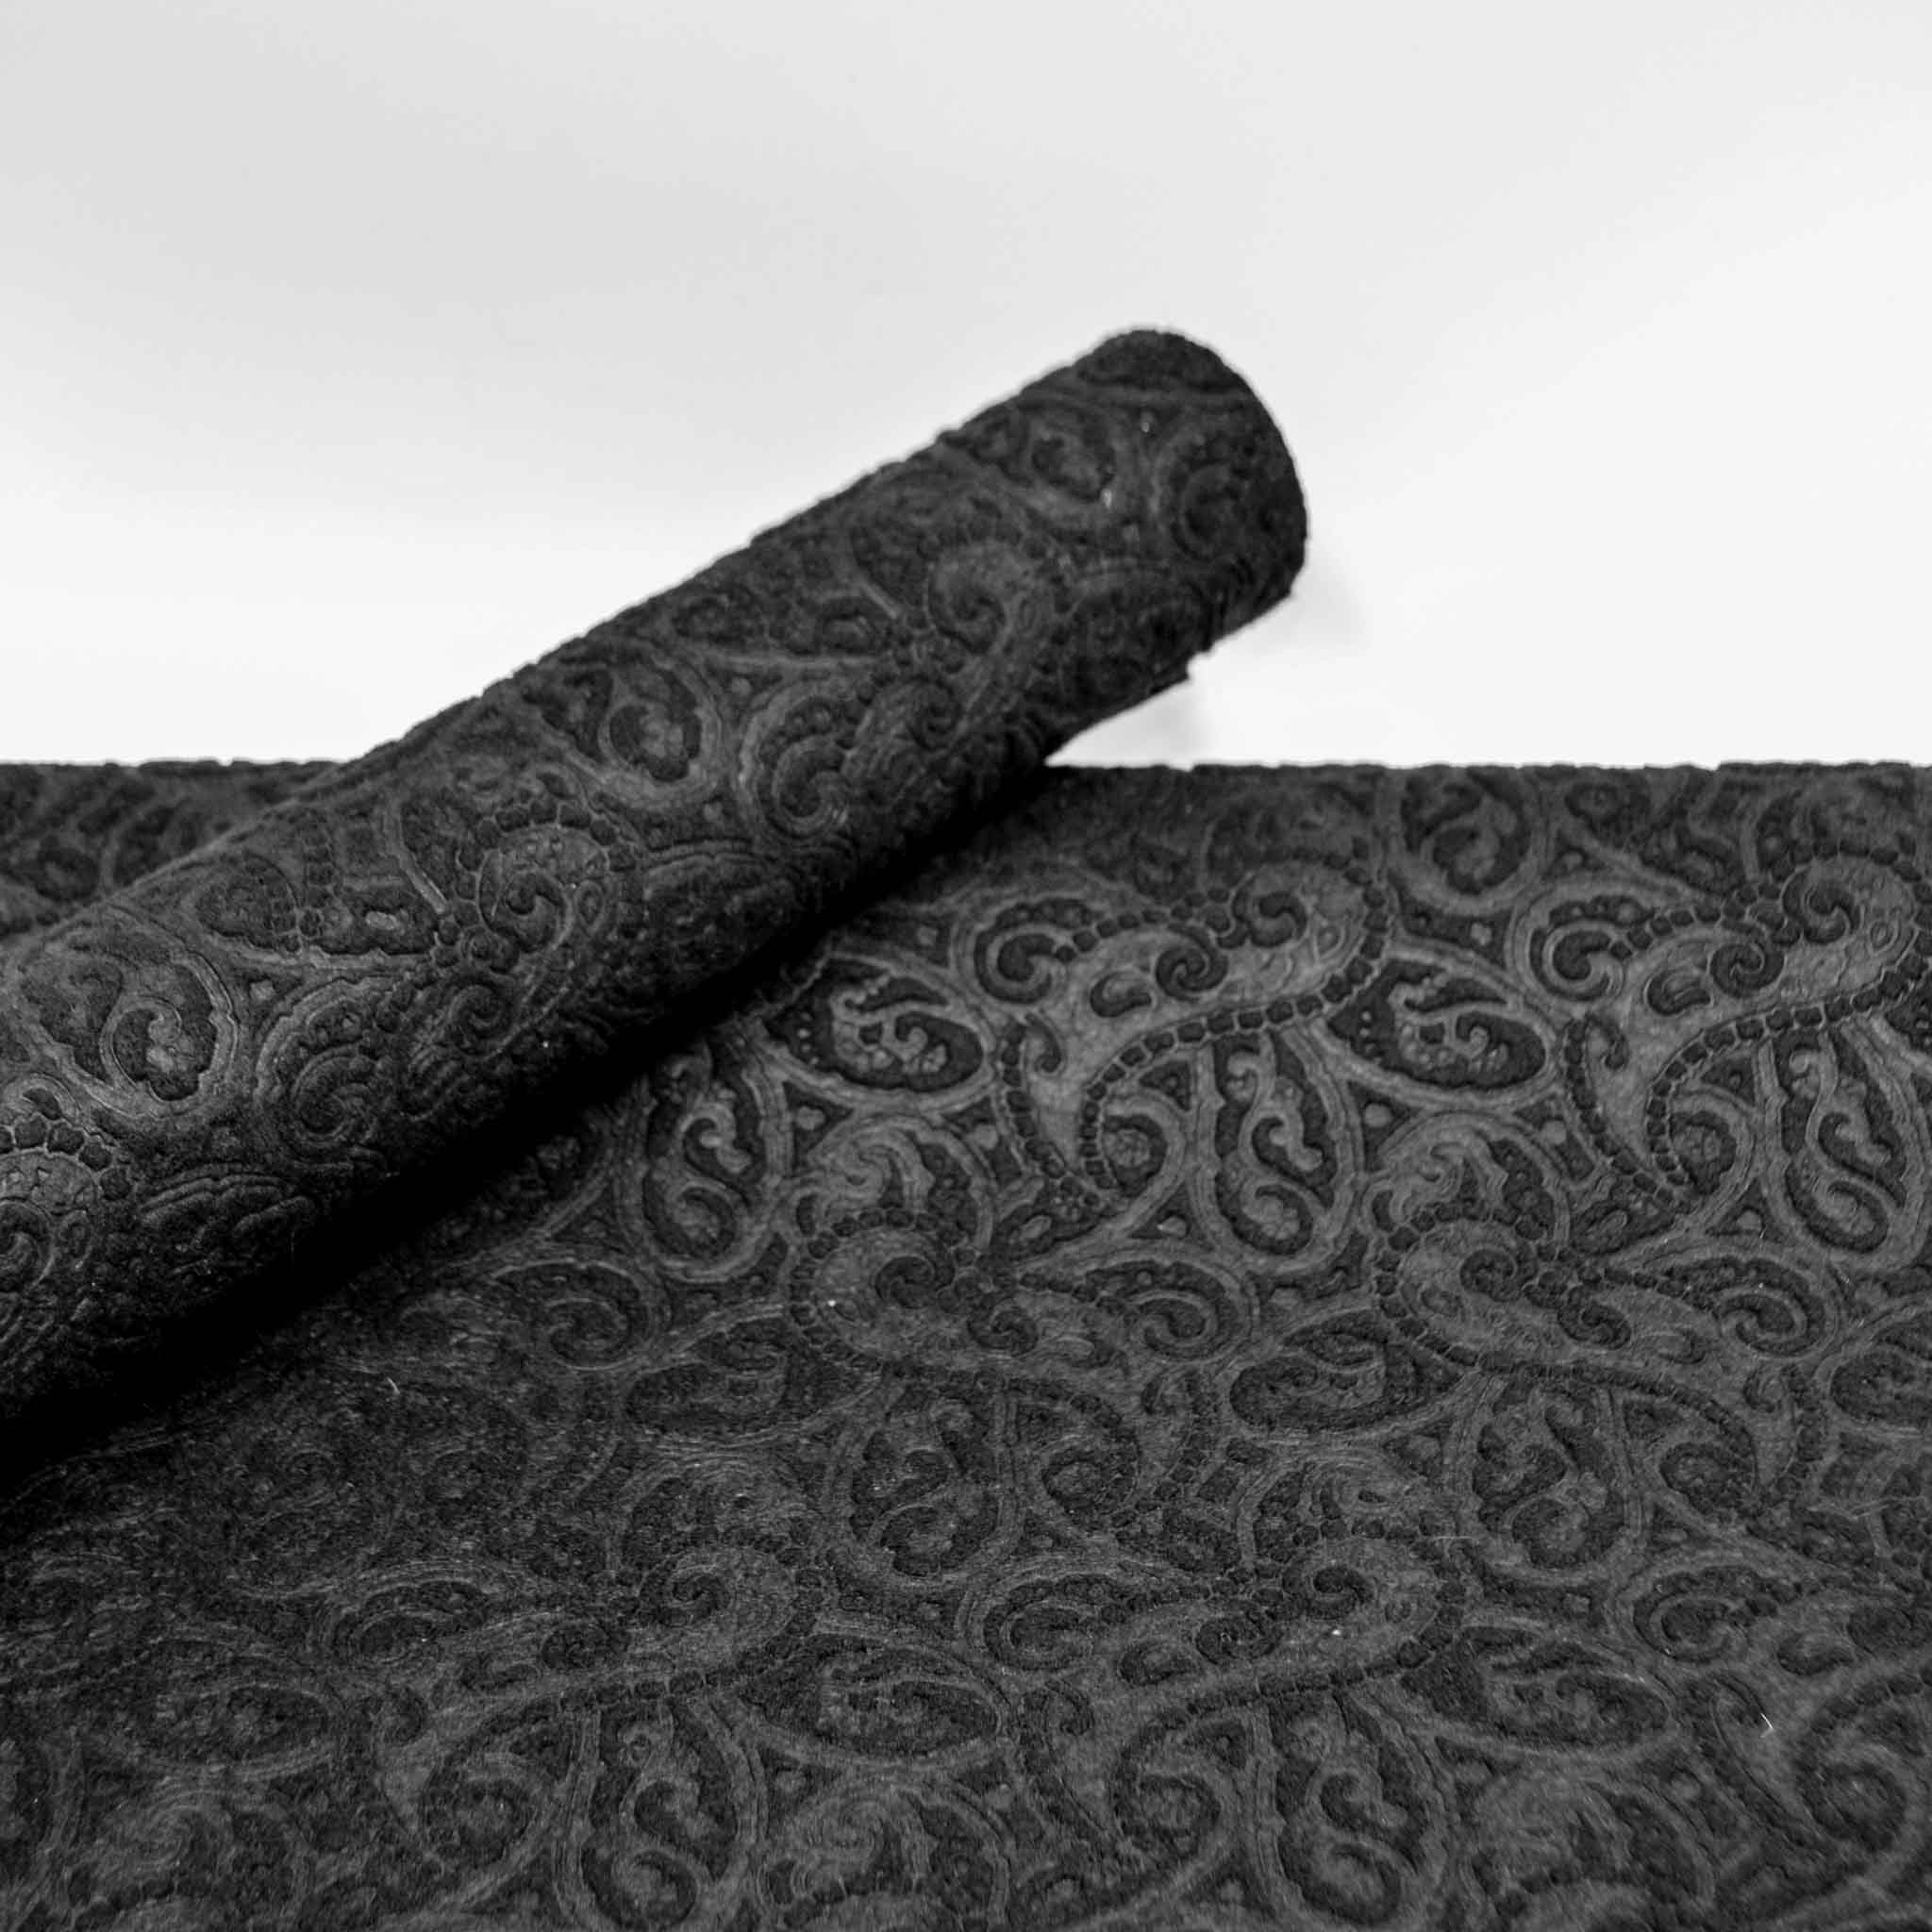 Deco-Line - Filz - Taschenfilz - Polyester Filz - ca 3,50 mm stark Filz -  3,50 mm - 4,00 mm dicker Filz - 3,5mm starker Filz - schwarzer Filz schwarz